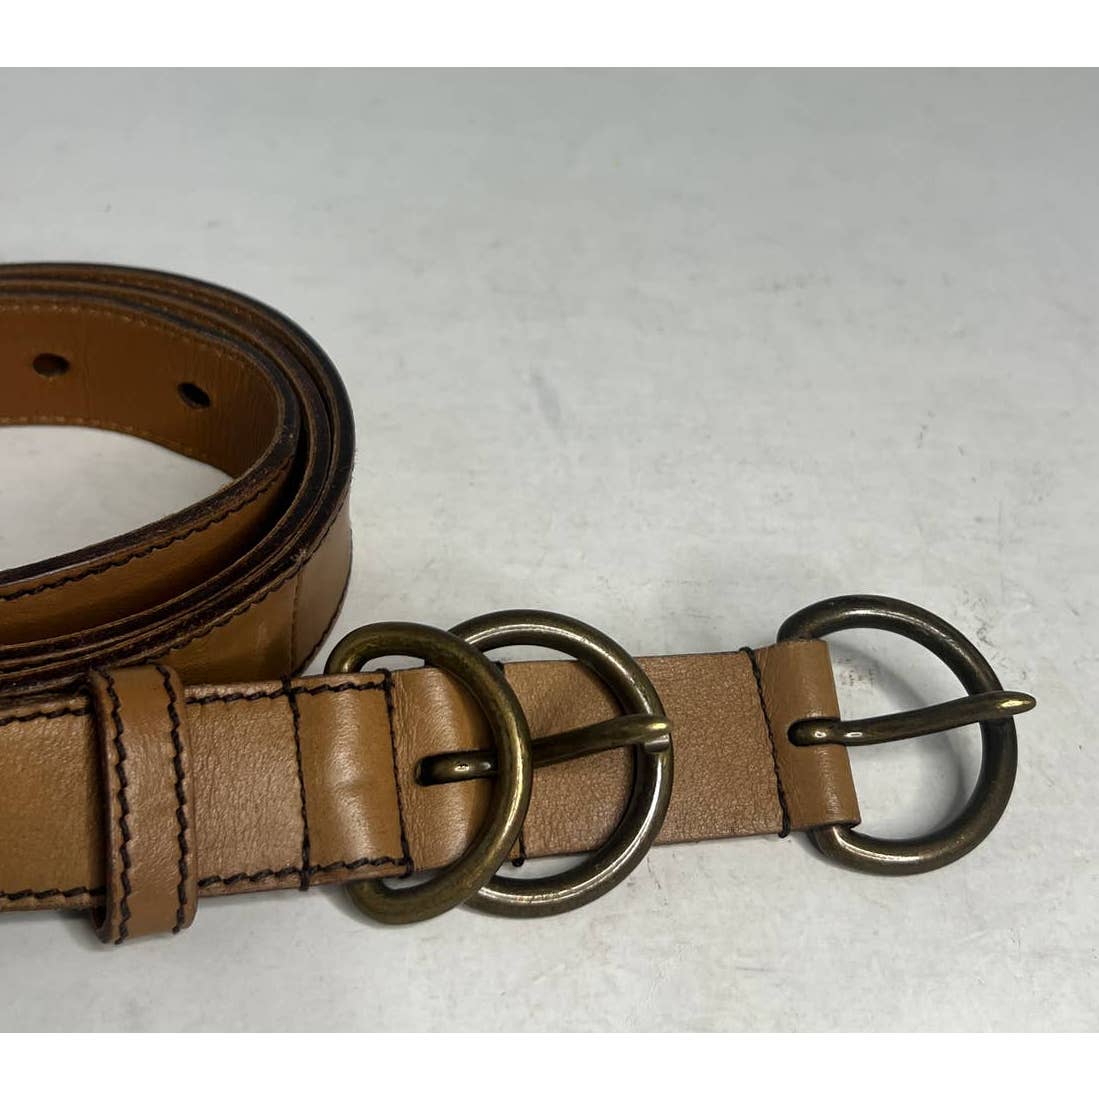 Miu Miu Brown Leather Belt Sz. 90/36